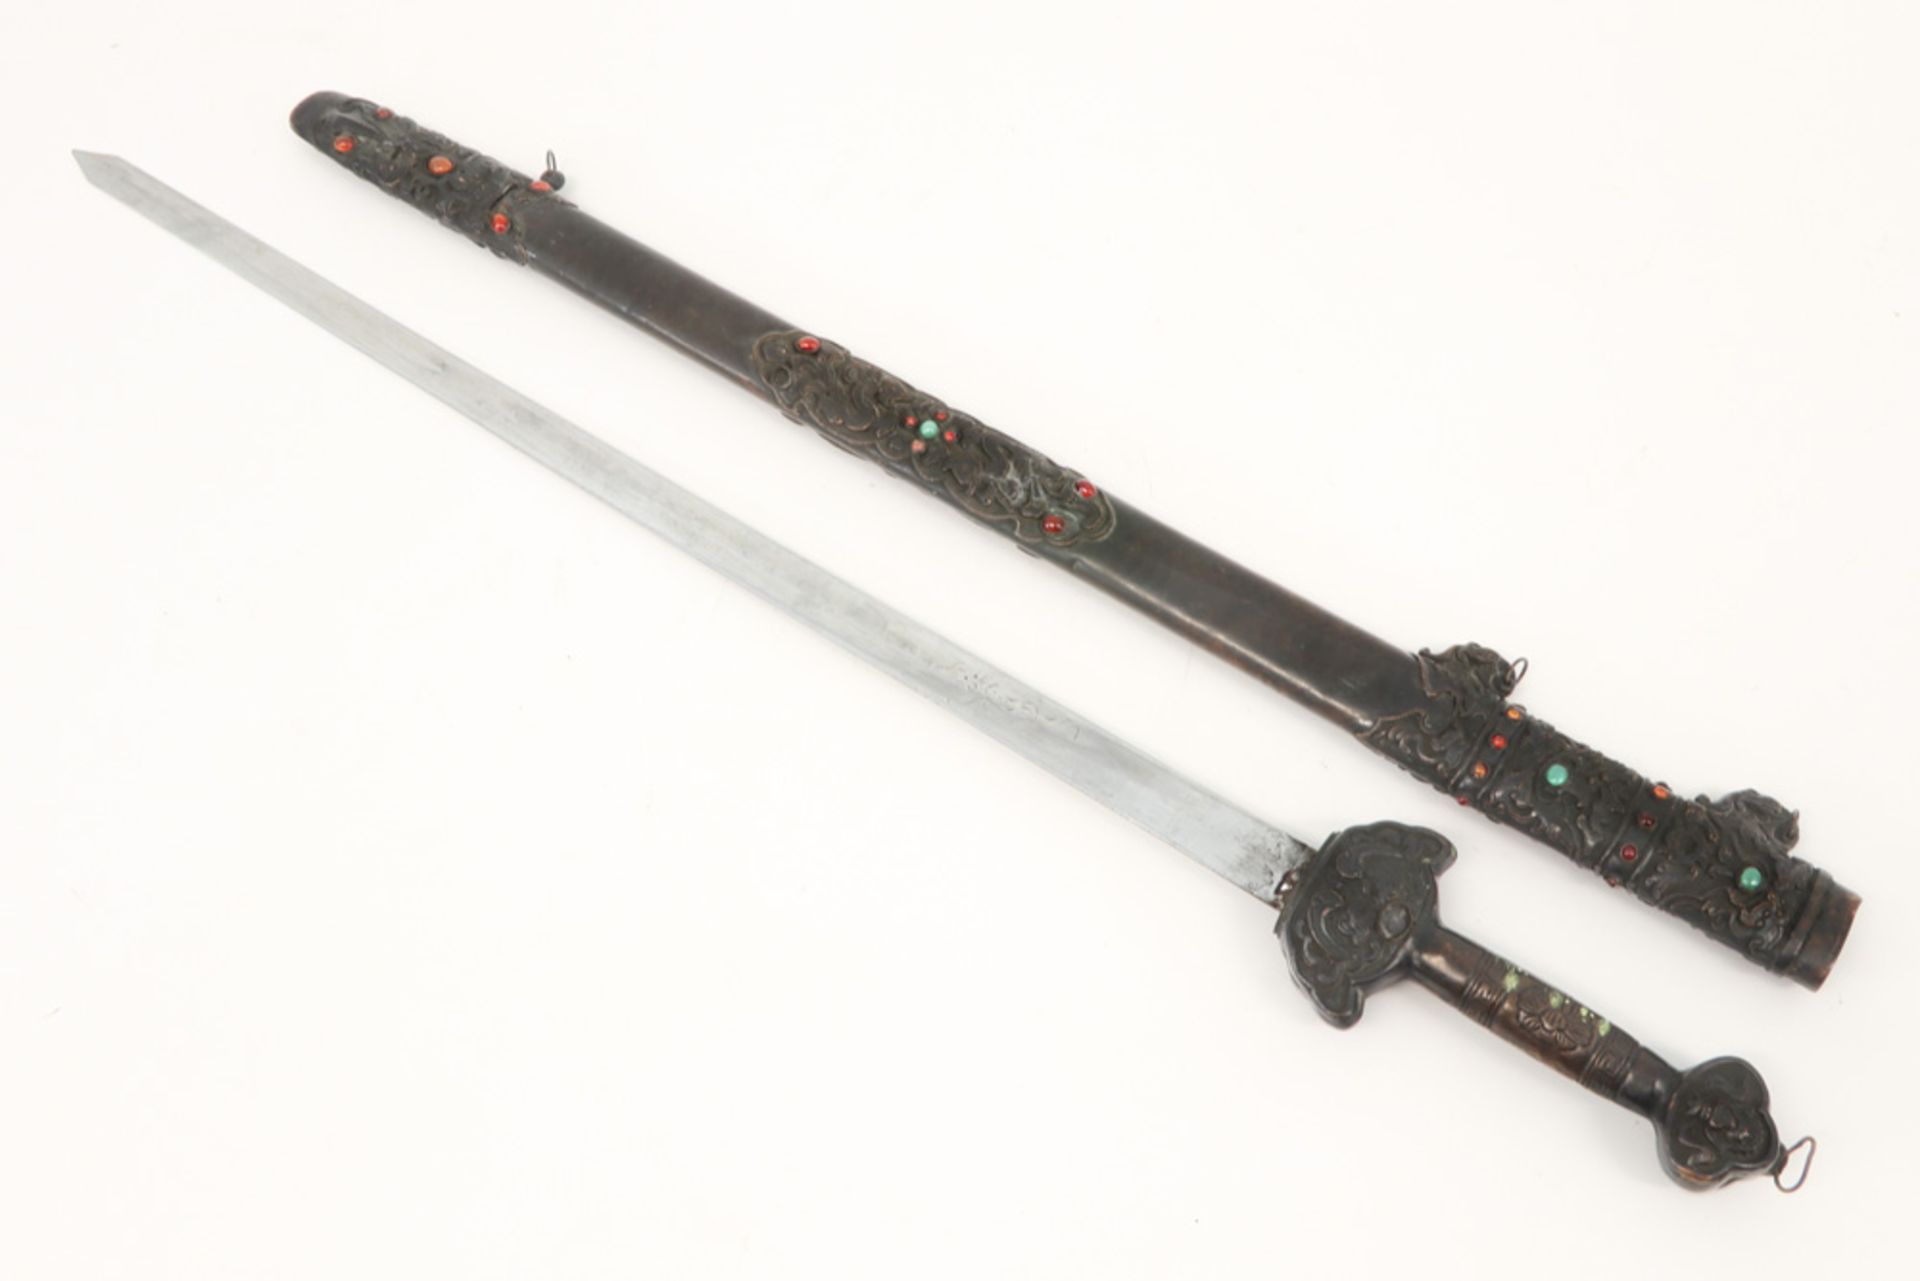 Chinese sword with cabochon stones ||Chinees zwaard met schede en greep bezet met cabochons - lengte - Image 2 of 2